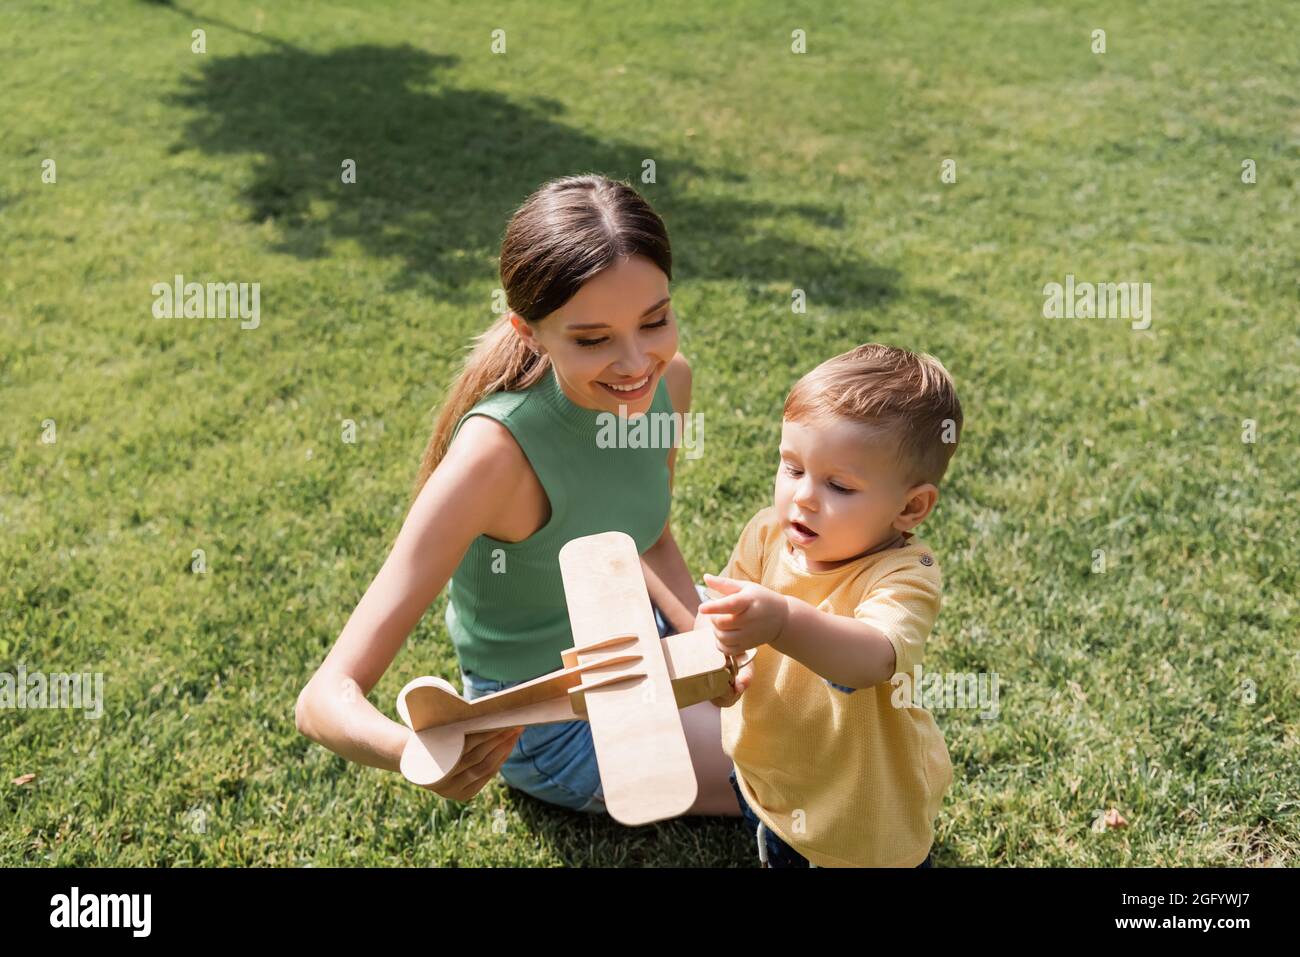 madre sorridente che tiene il biplano giocattolo vicino al figlio del bambino sull'erba Foto Stock